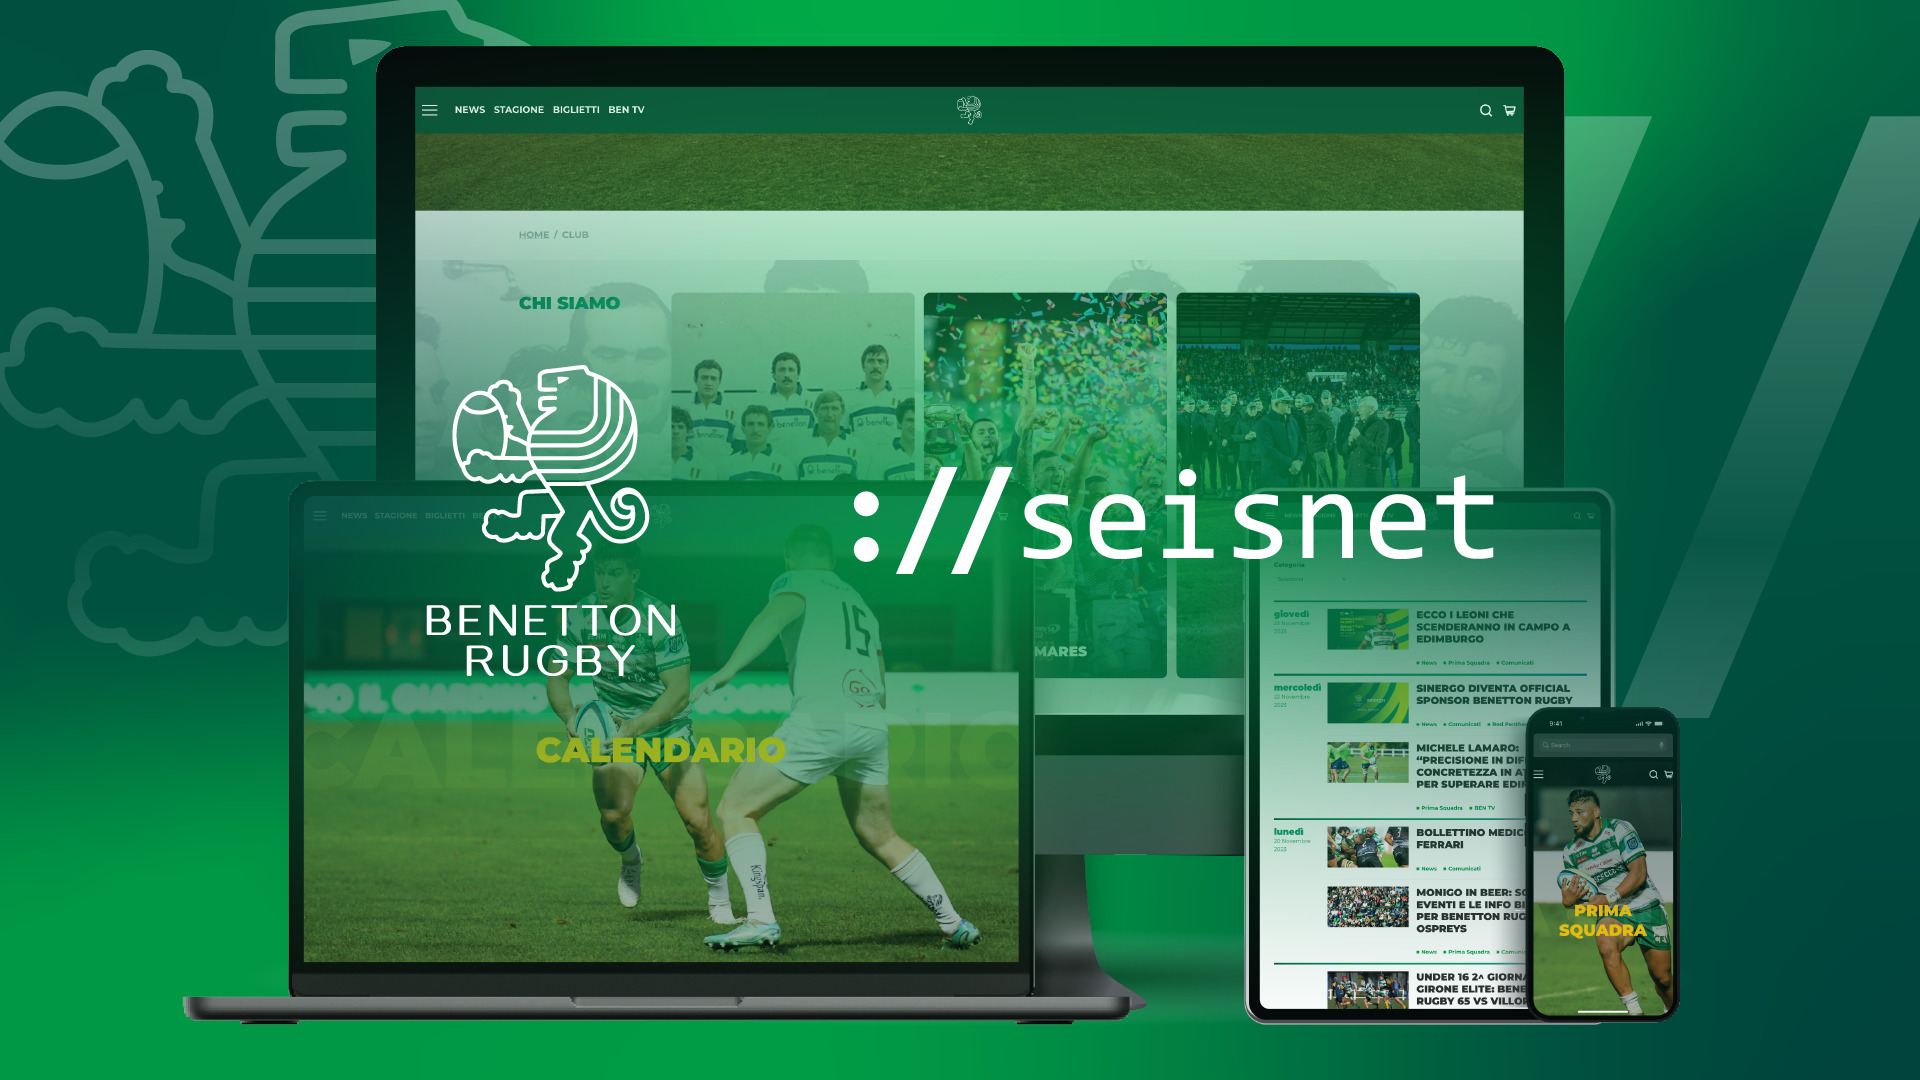 Debutta il nuovo sito web di Benetton Rugby: un tributo all’unione tra squadra e tifosi